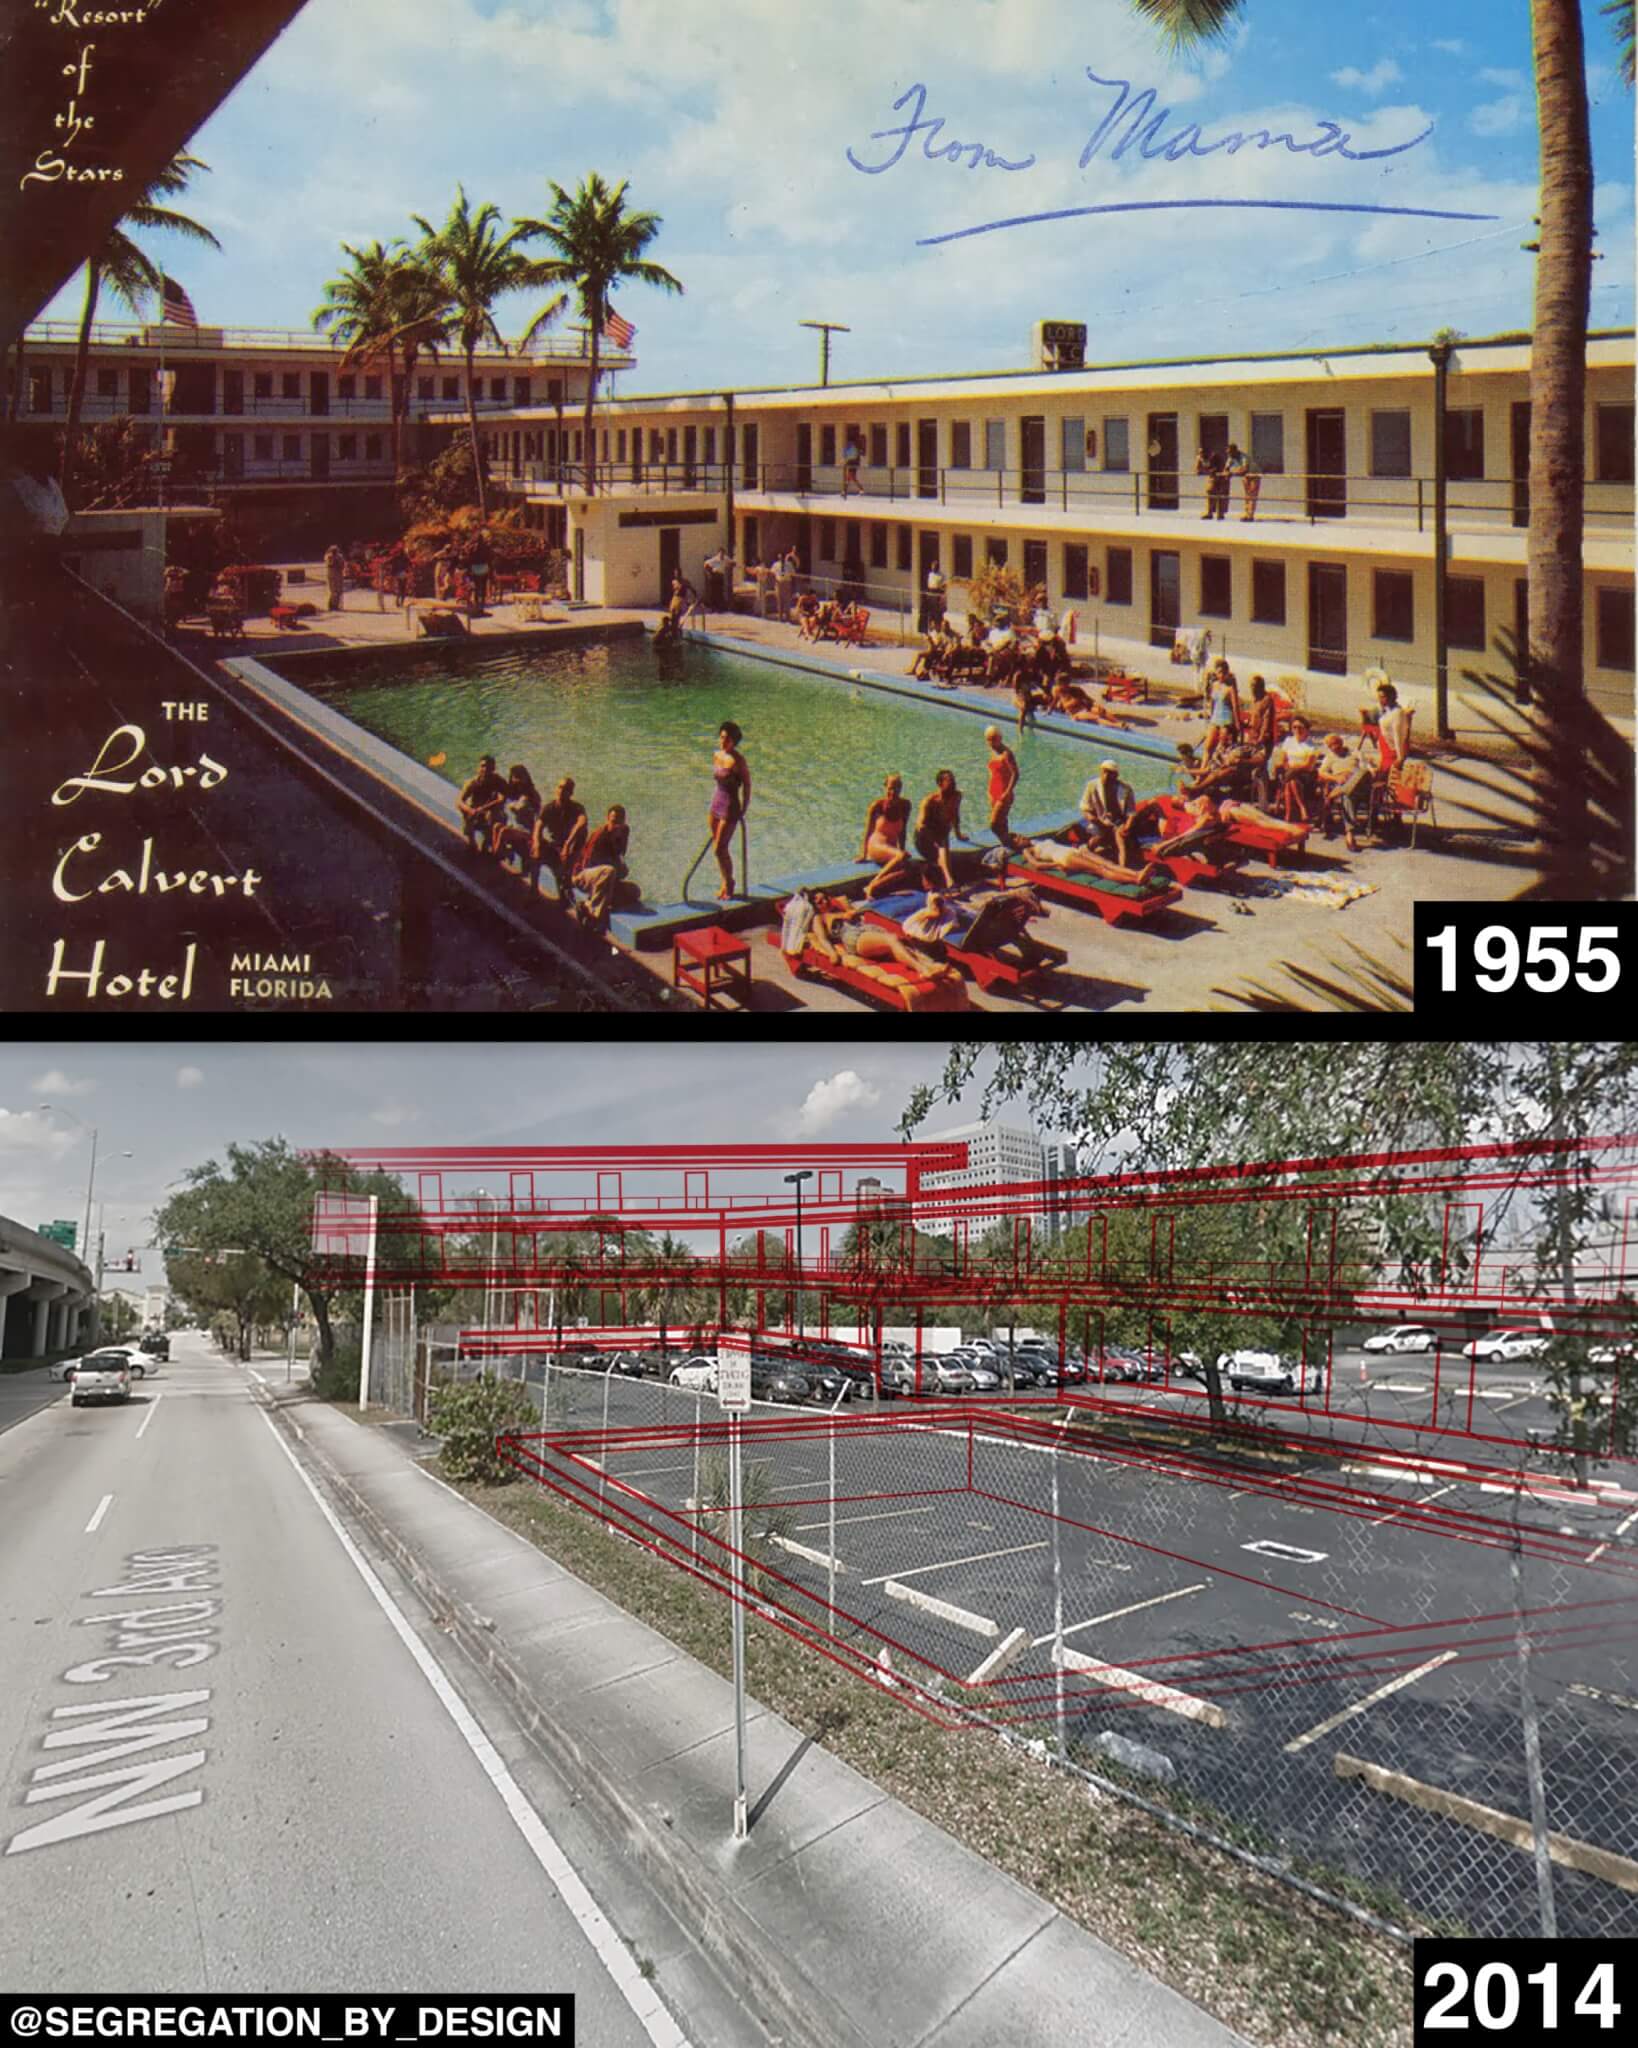 一张明信片展示了迈阿密一家酒店充满活力的场景，与现在的地面停车场形成对比